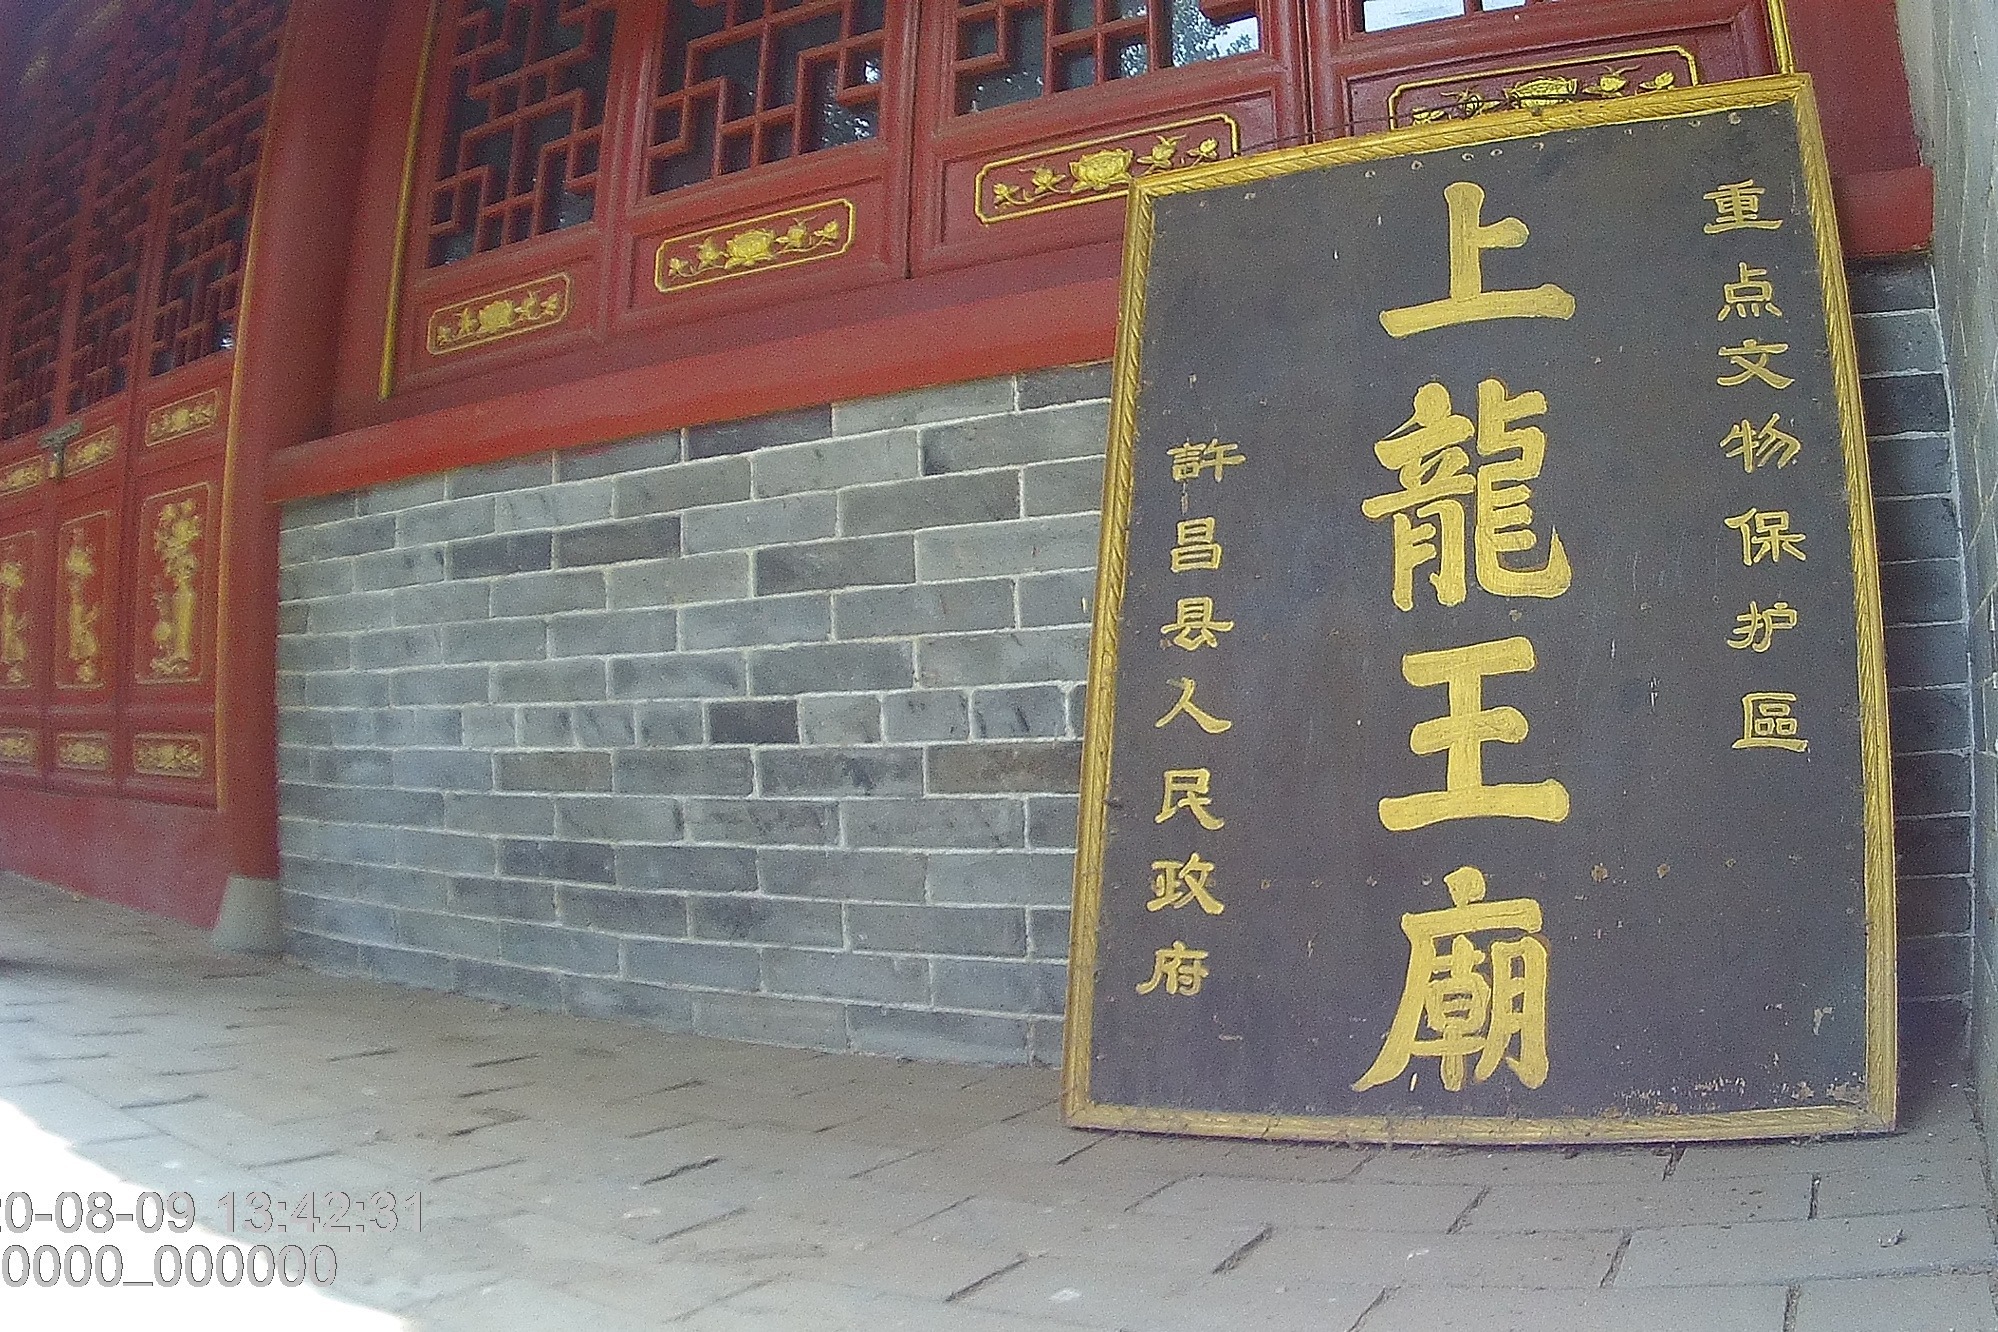 上龙王庙不是所有龙王庙都称上龙王庙唐太宗有关许昌榆林乡